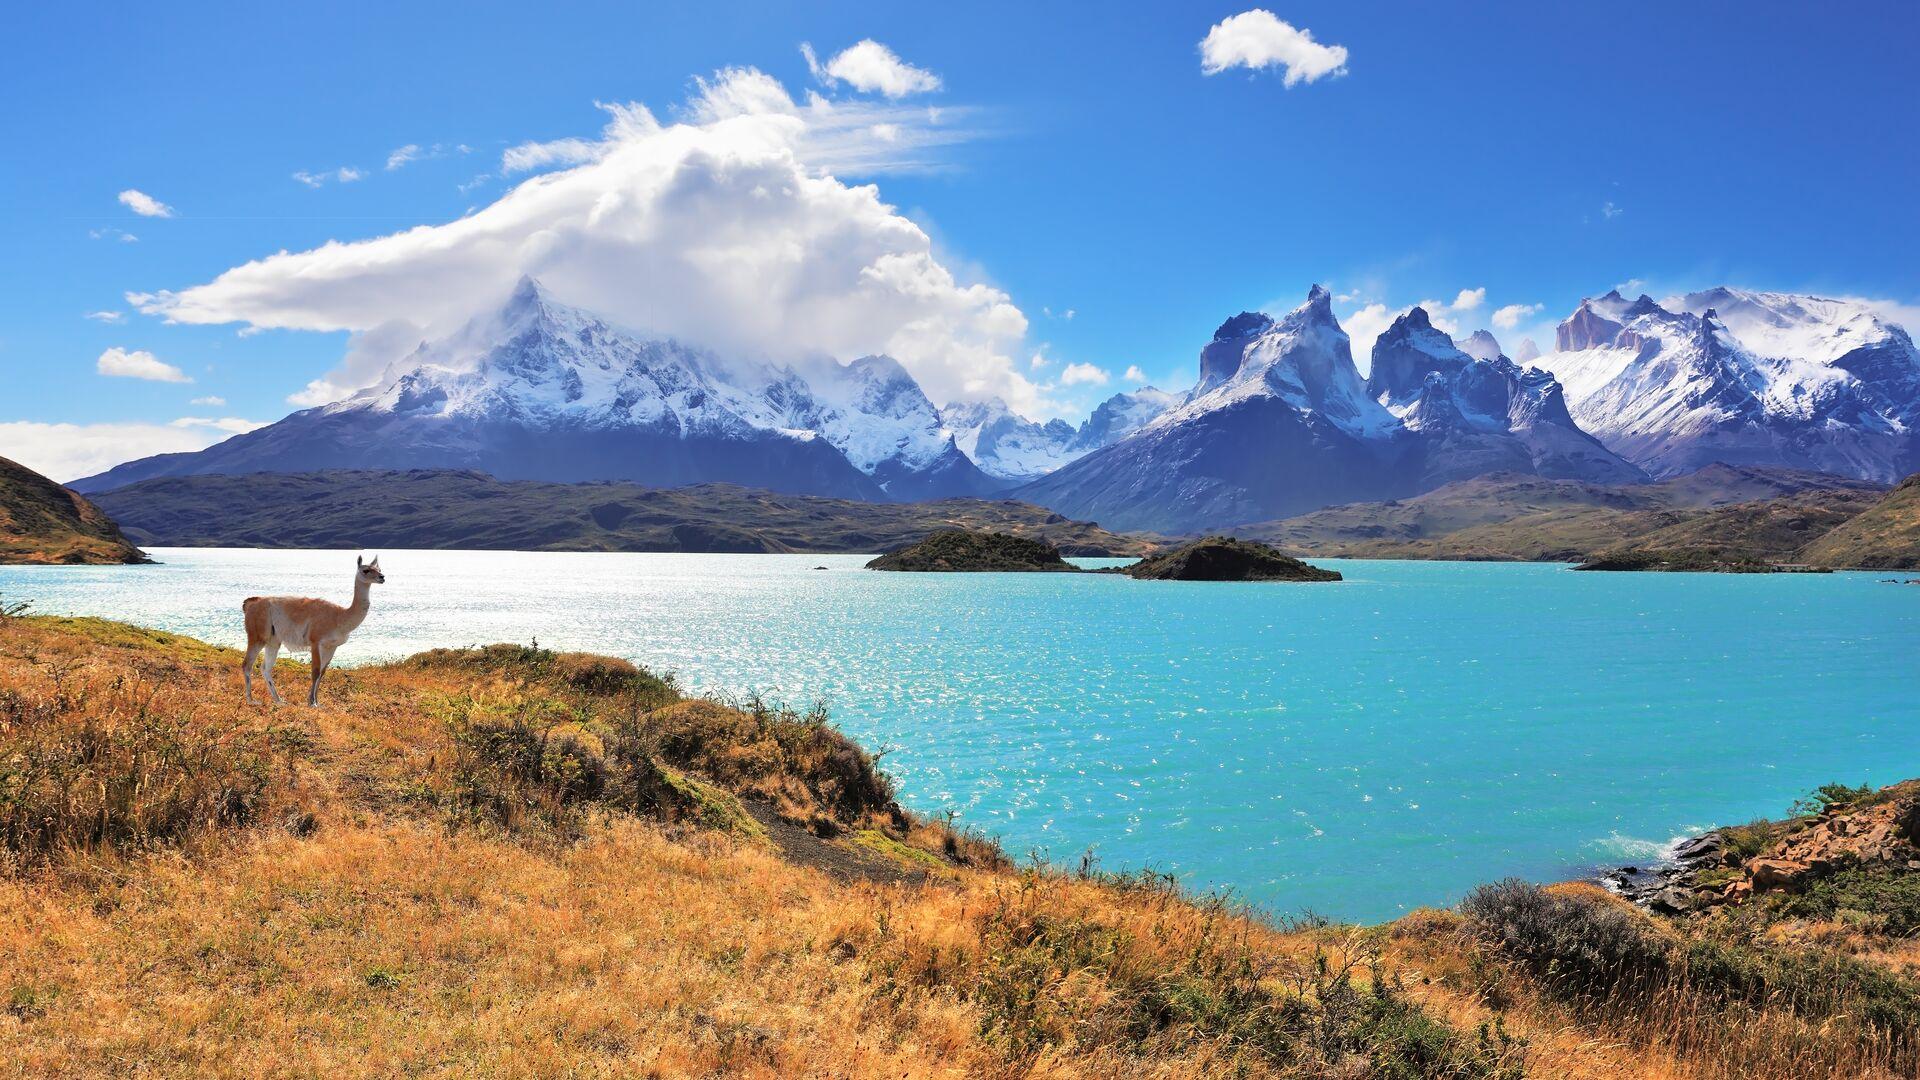 Sejour linguistique Chili, National Park Torres del Paine